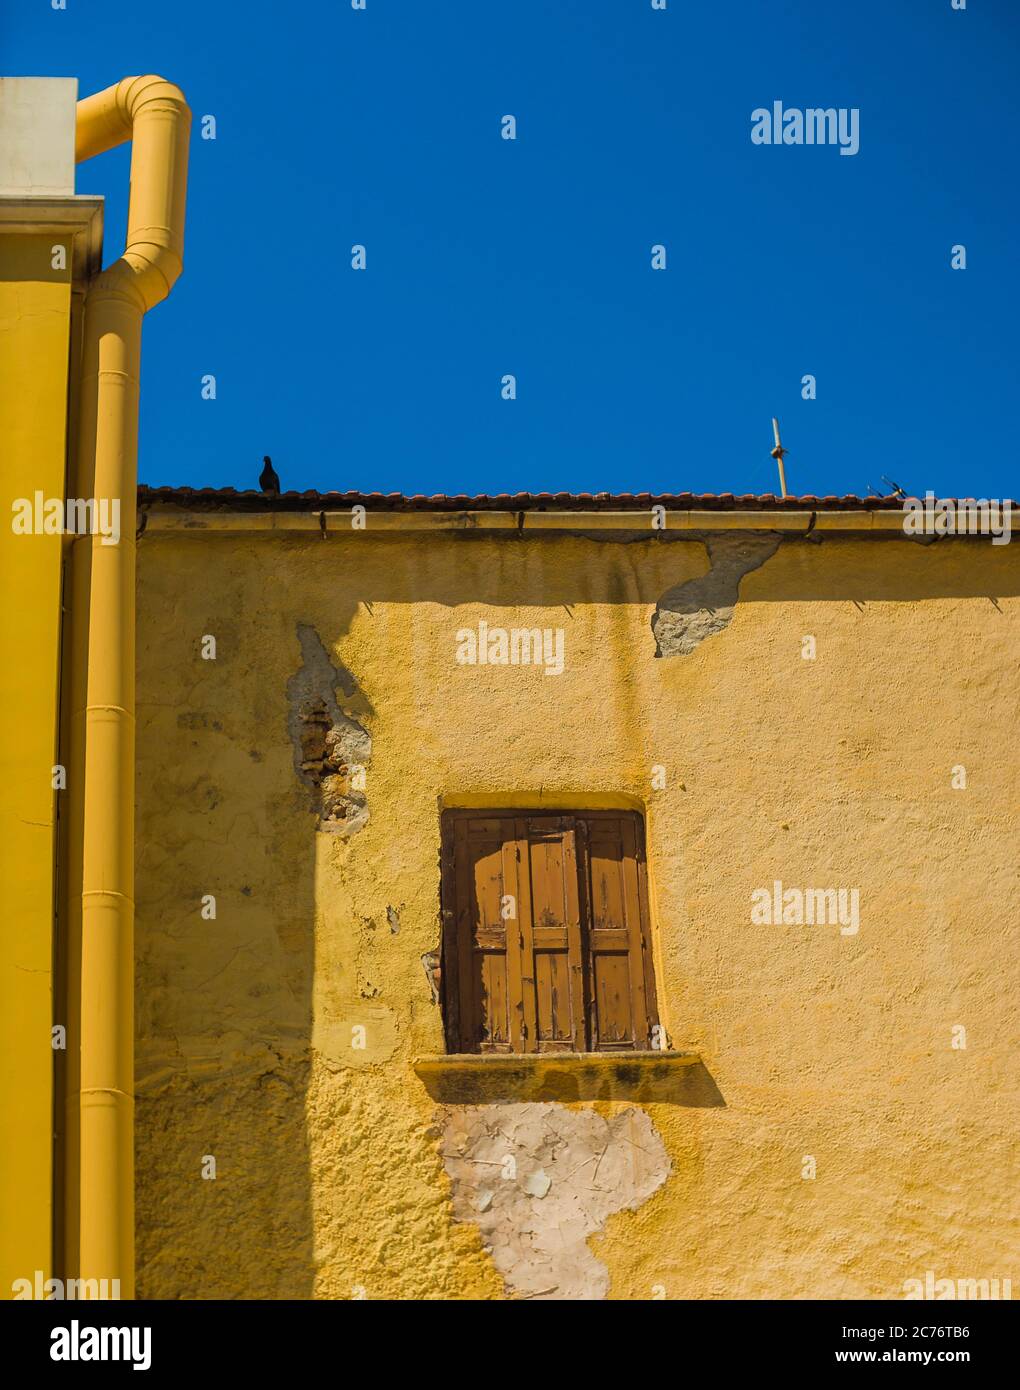 Rustikales braunes Holzfenster an der gelben Fassade eines alten mediterranen Hauses. Blauer Himmel als Hintergrund. Stockfoto